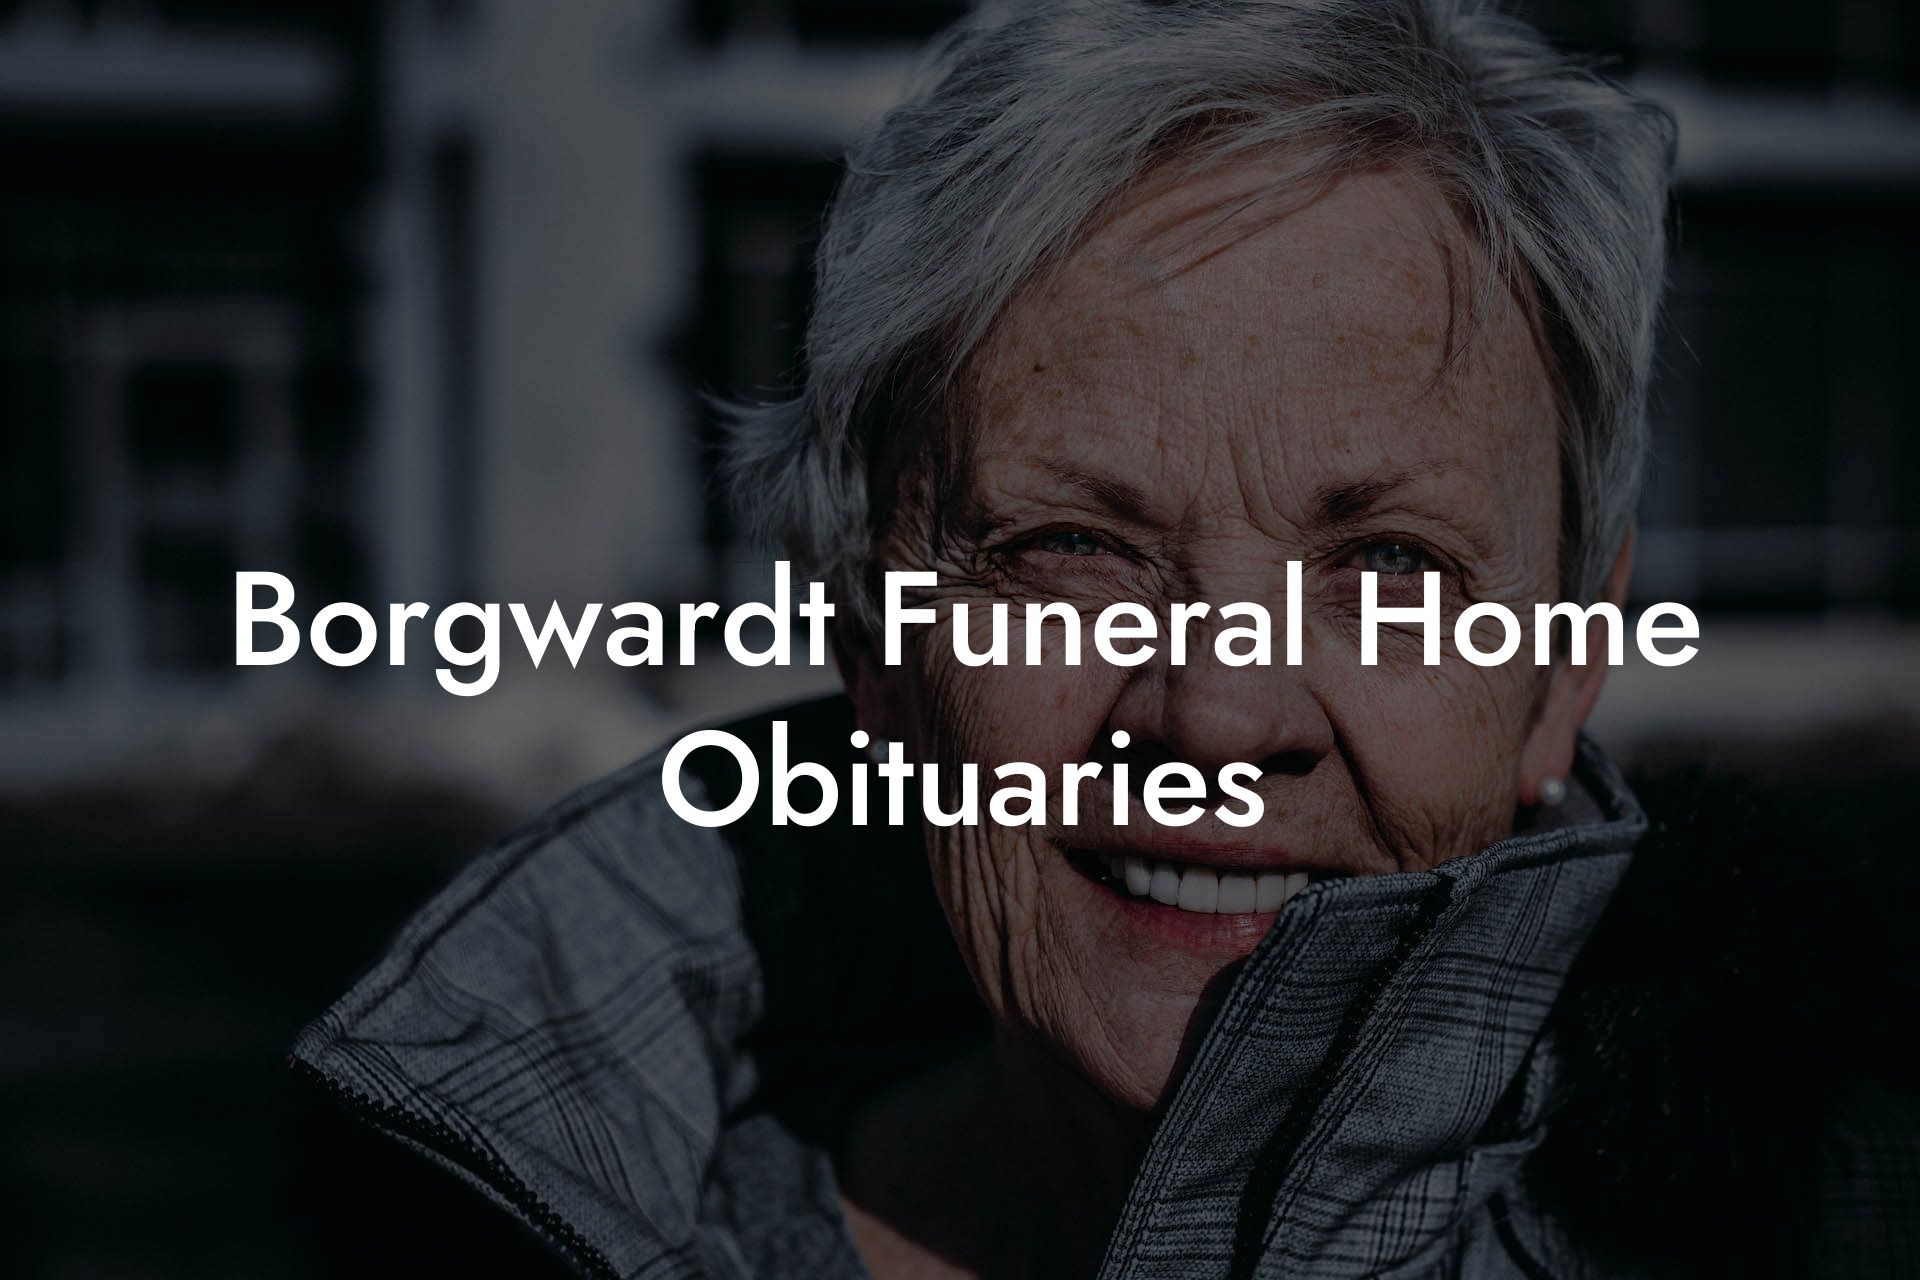 Borgwardt Funeral Home Obituaries